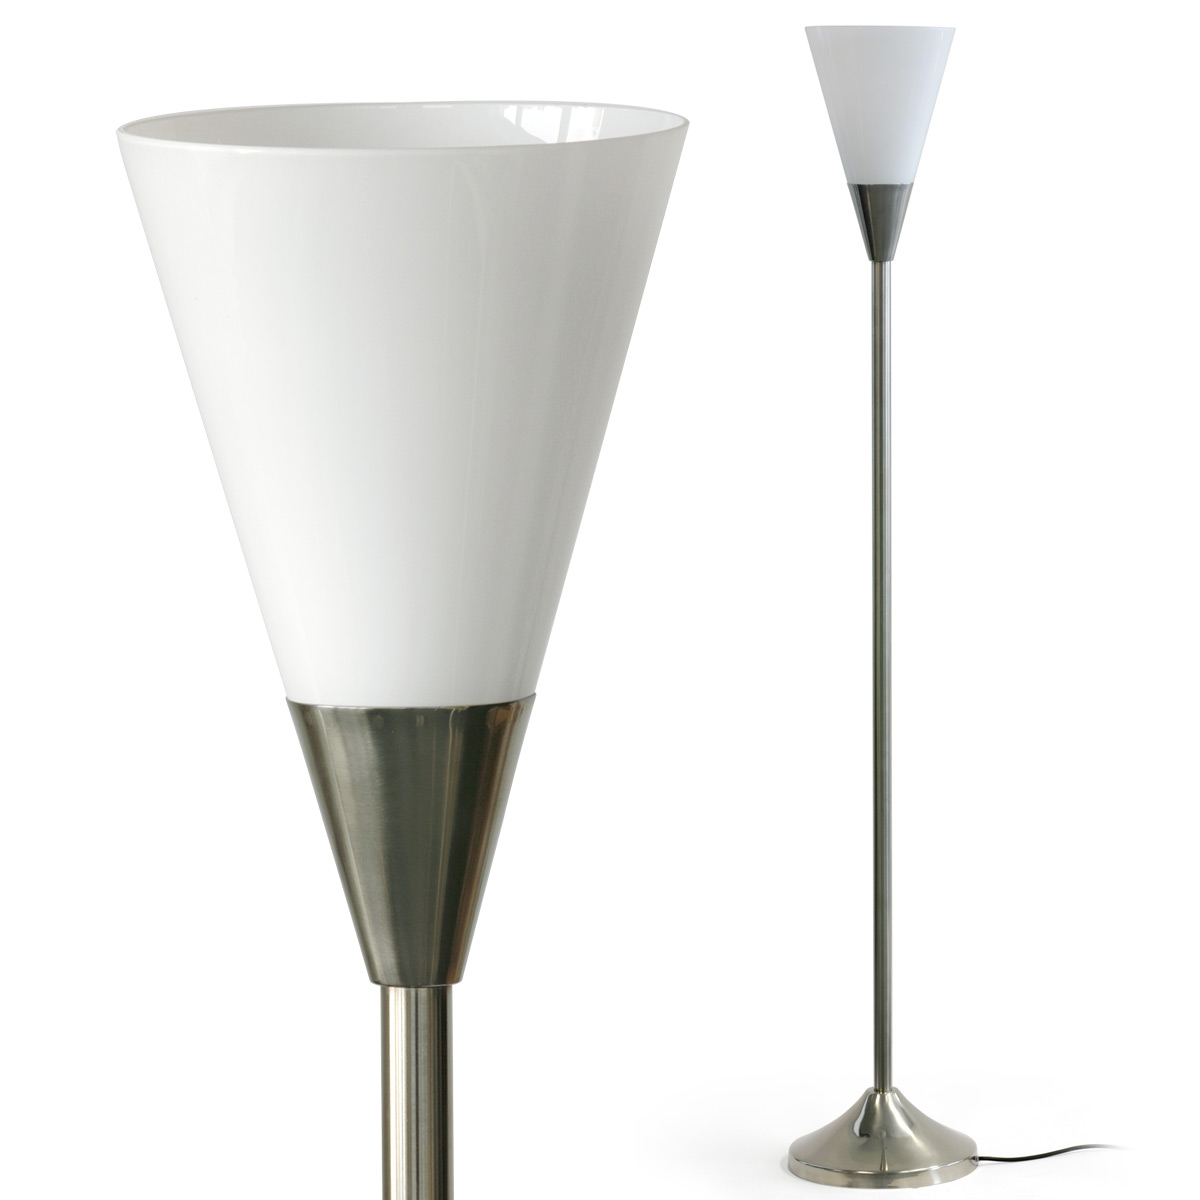 Art déco-Stehleuchte mit opalenem Spitzkegel-Glas: Art déco Deckenfluter-Stehleuchte mit Tüten- bzw. Kegel-Schirm aus Opalglas (hier Messing mattvernickelt)